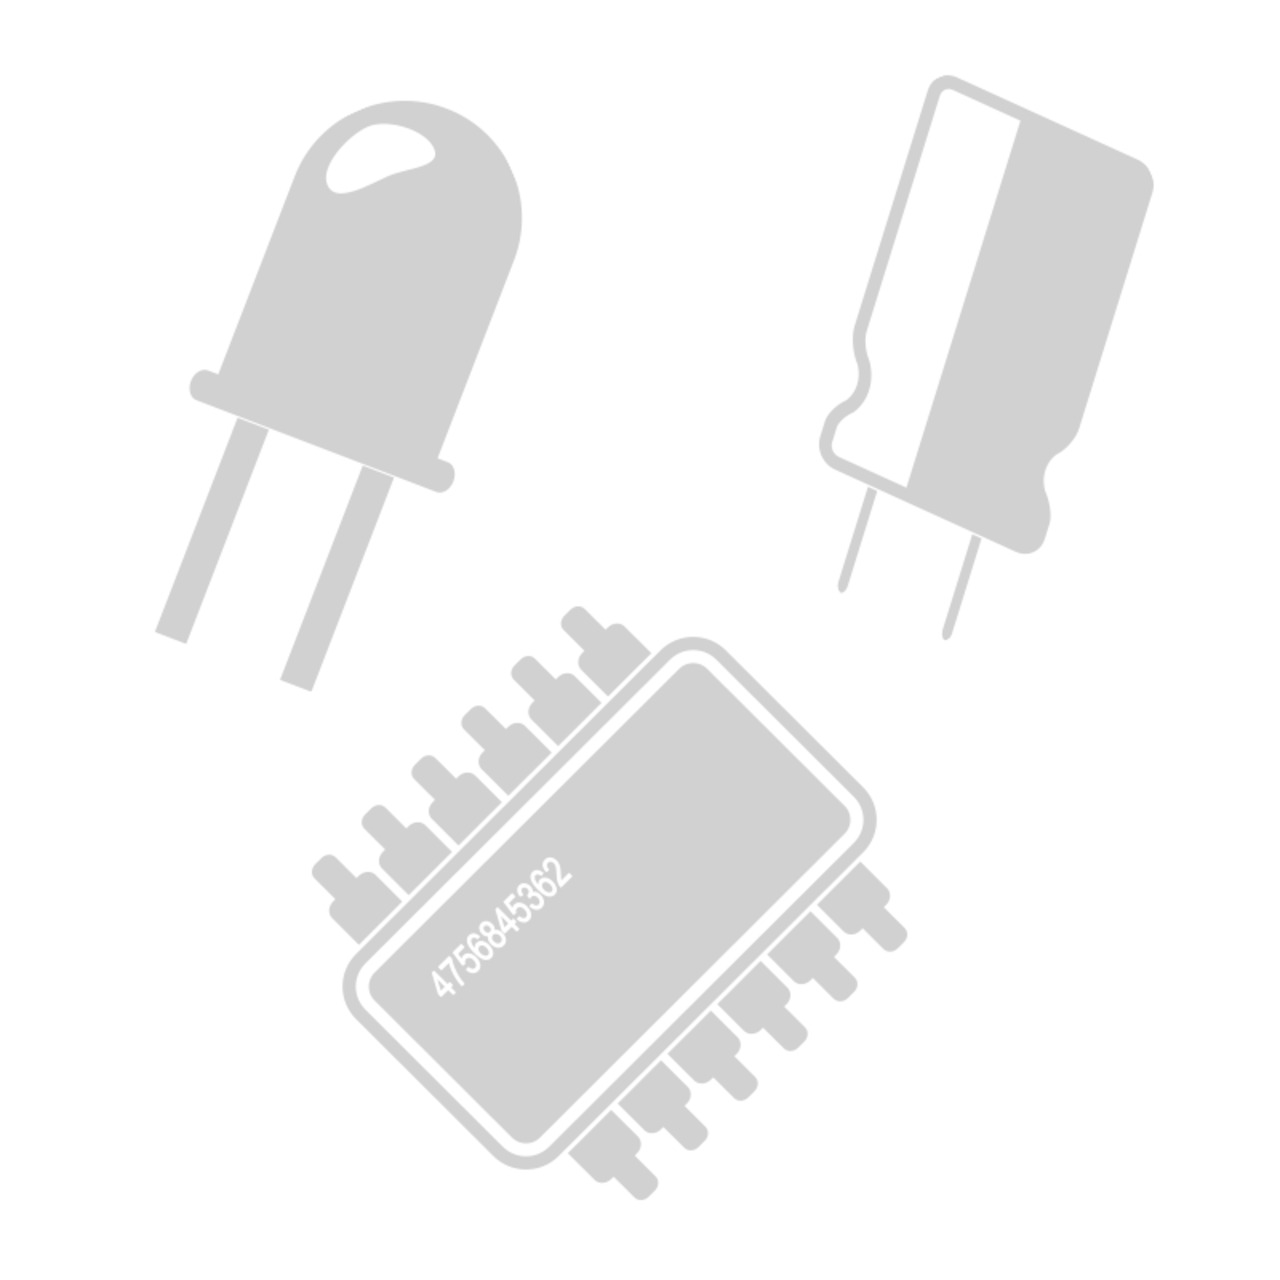 SMD-Chip-LEDs- Weiss- Bauform 1206 unter Komponenten